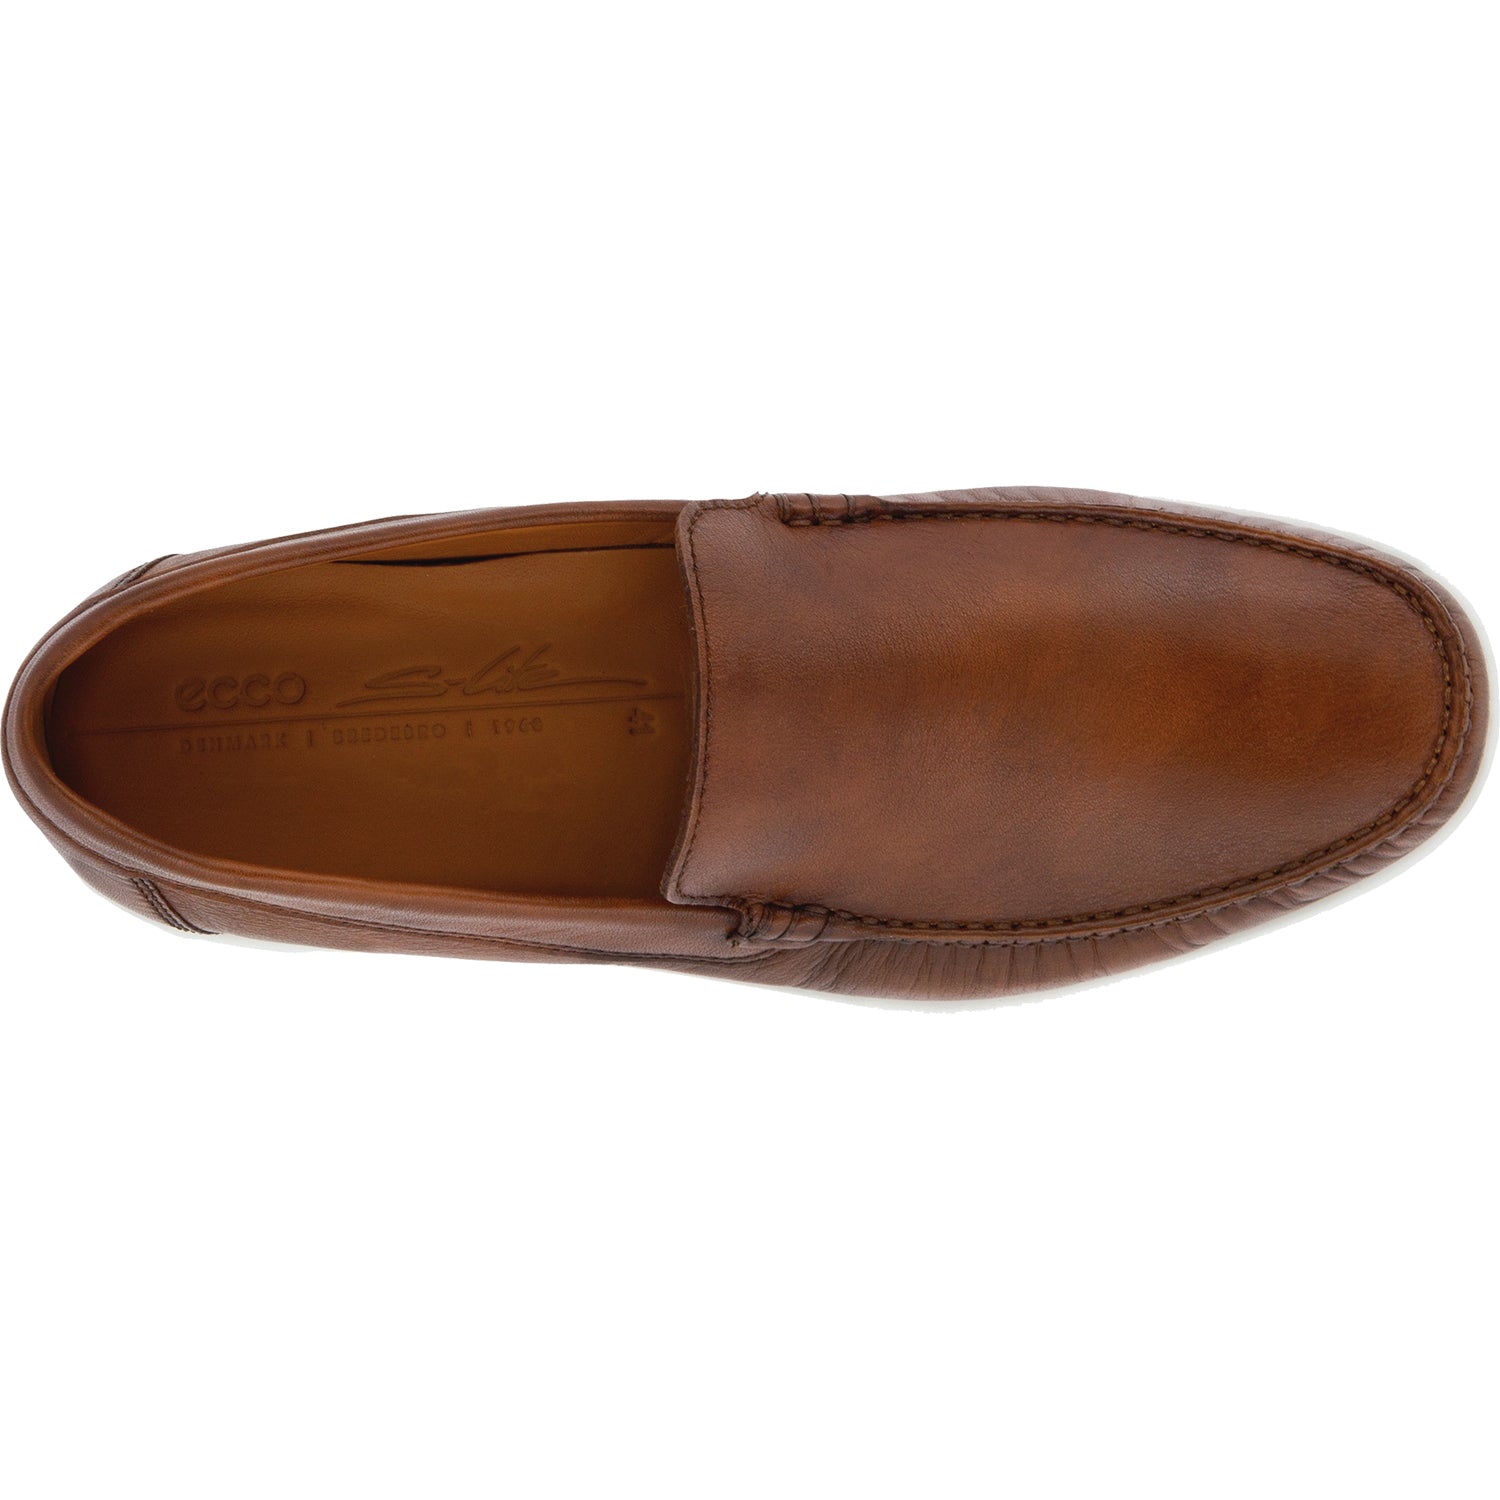 Ecco S Lite Moc Classic Cognac | Men's Slip-On Shoes | Footwear etc.